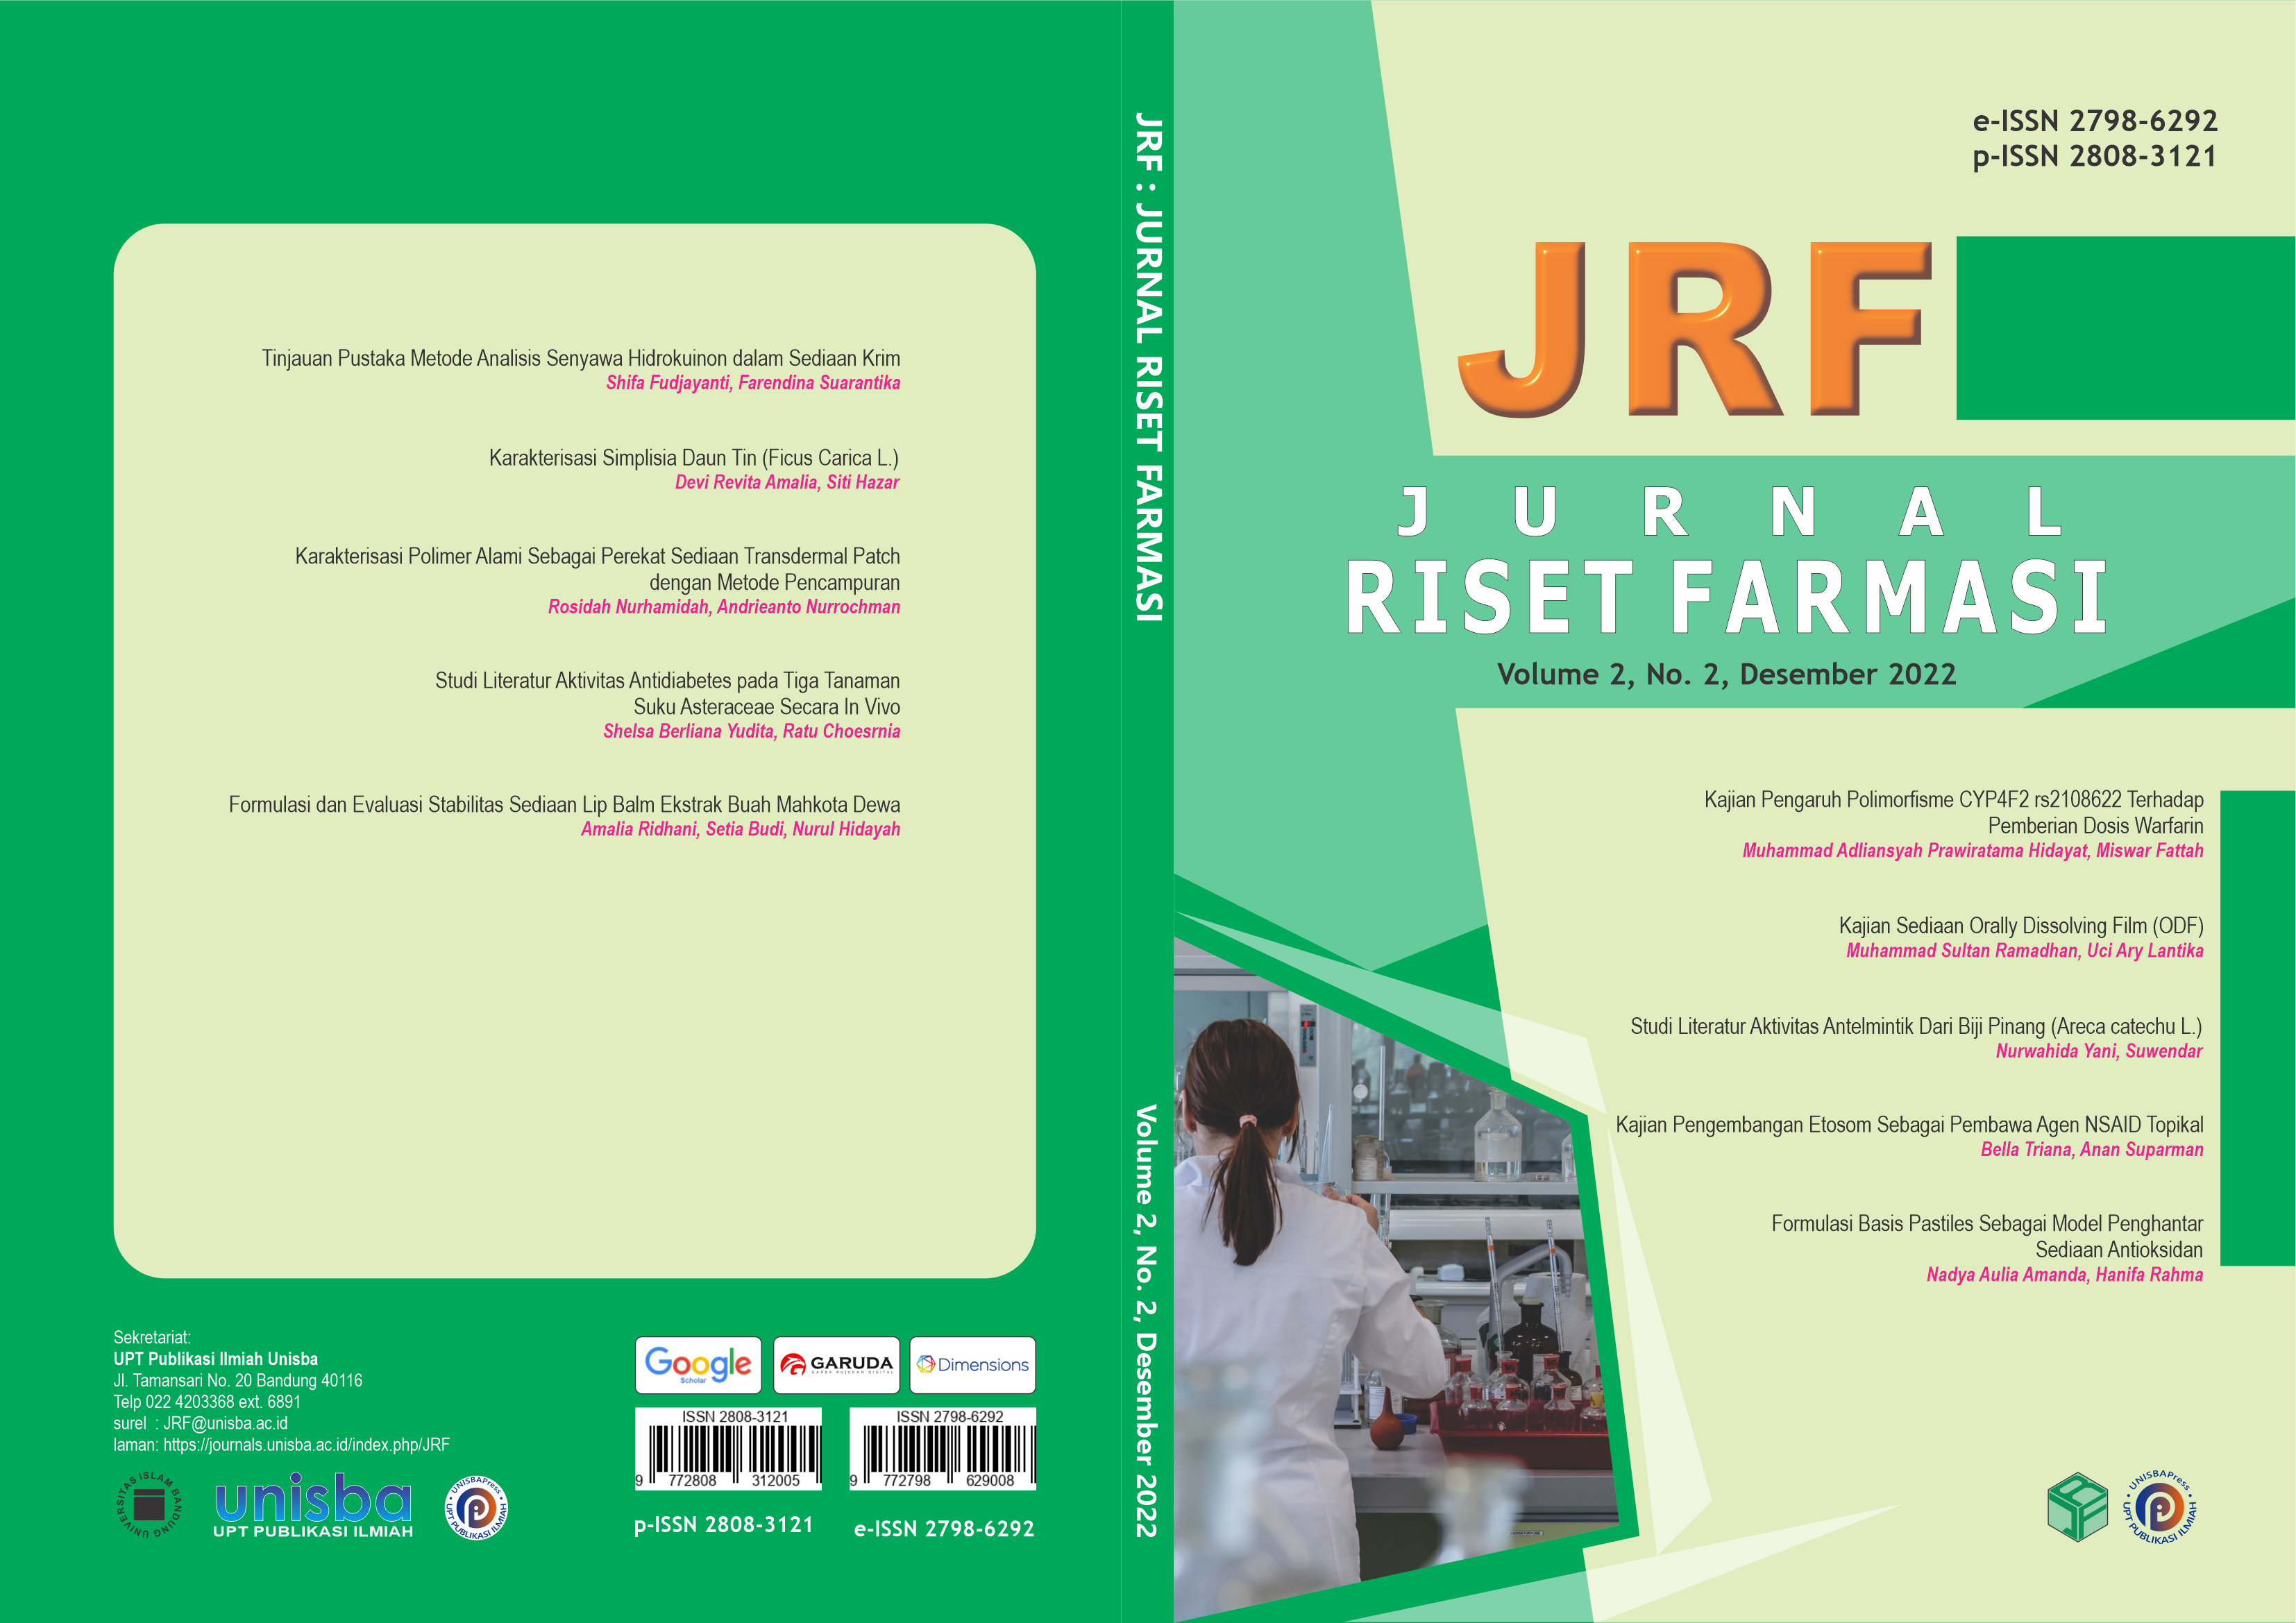 					View Volume 2, No. 2, Desember 2022, Jurnal Riset Farmasi (JRF)
				